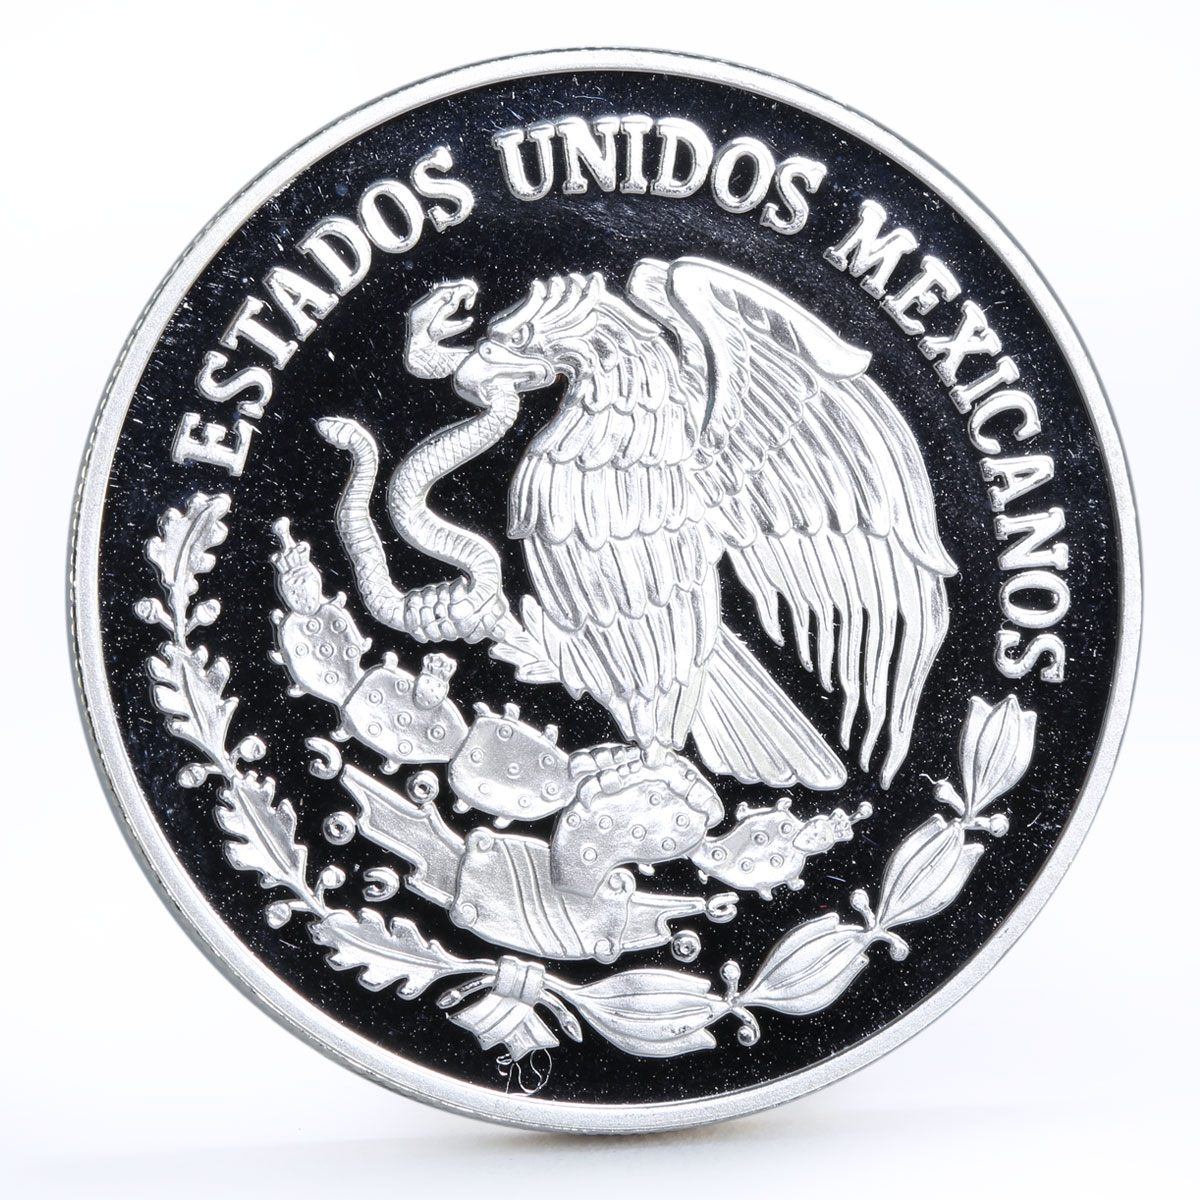 Mexico 100 pesos Animal Save the Vaquita Porpose proof silver coin 1992